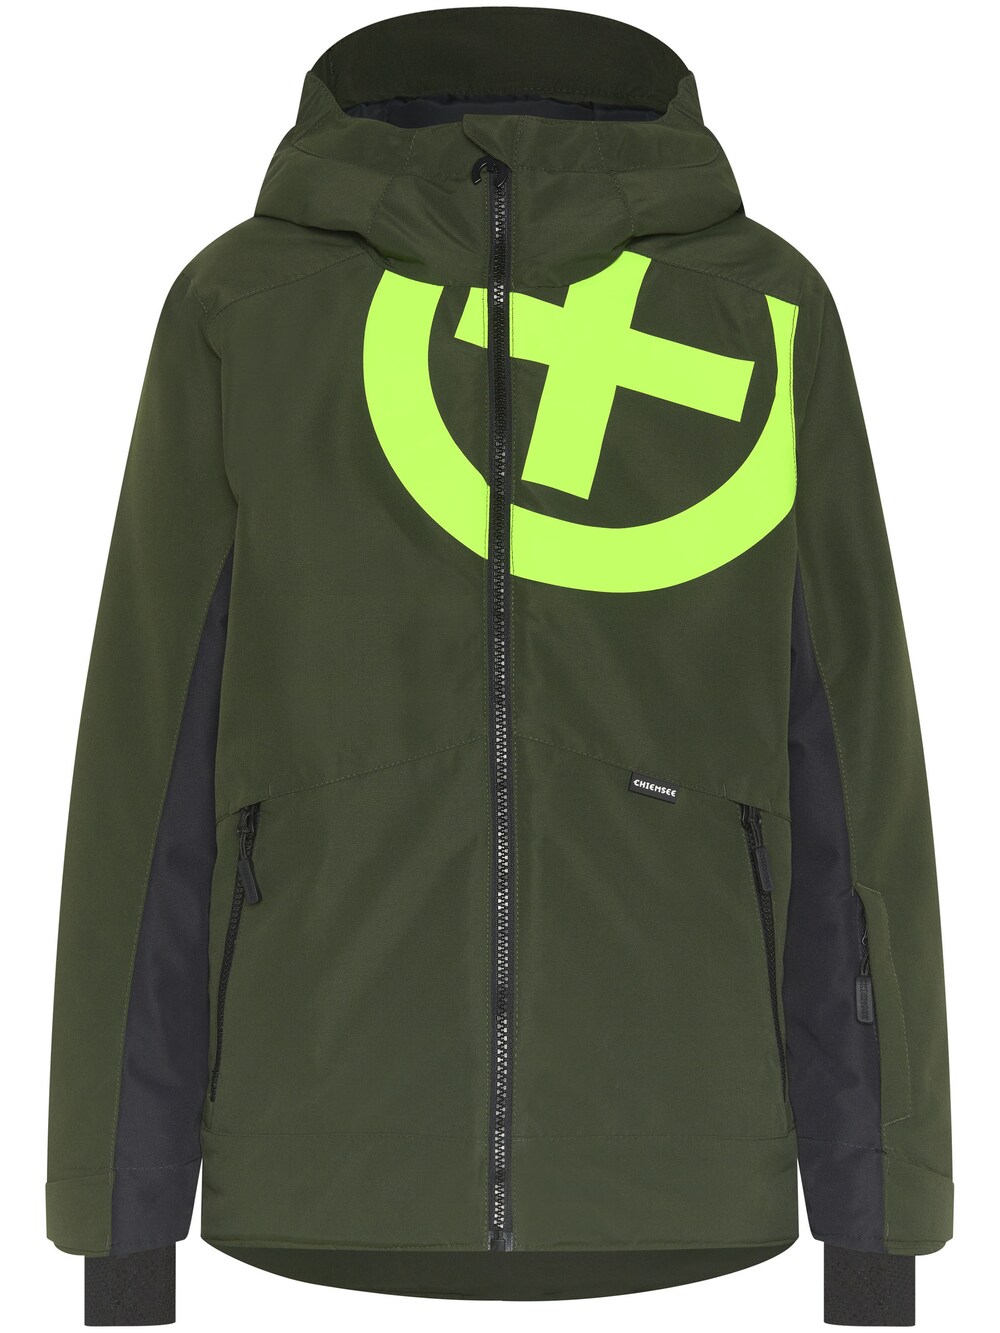 Спортивная куртка Chiemsee Chiemsee, светло-зеленый/темно-зеленый